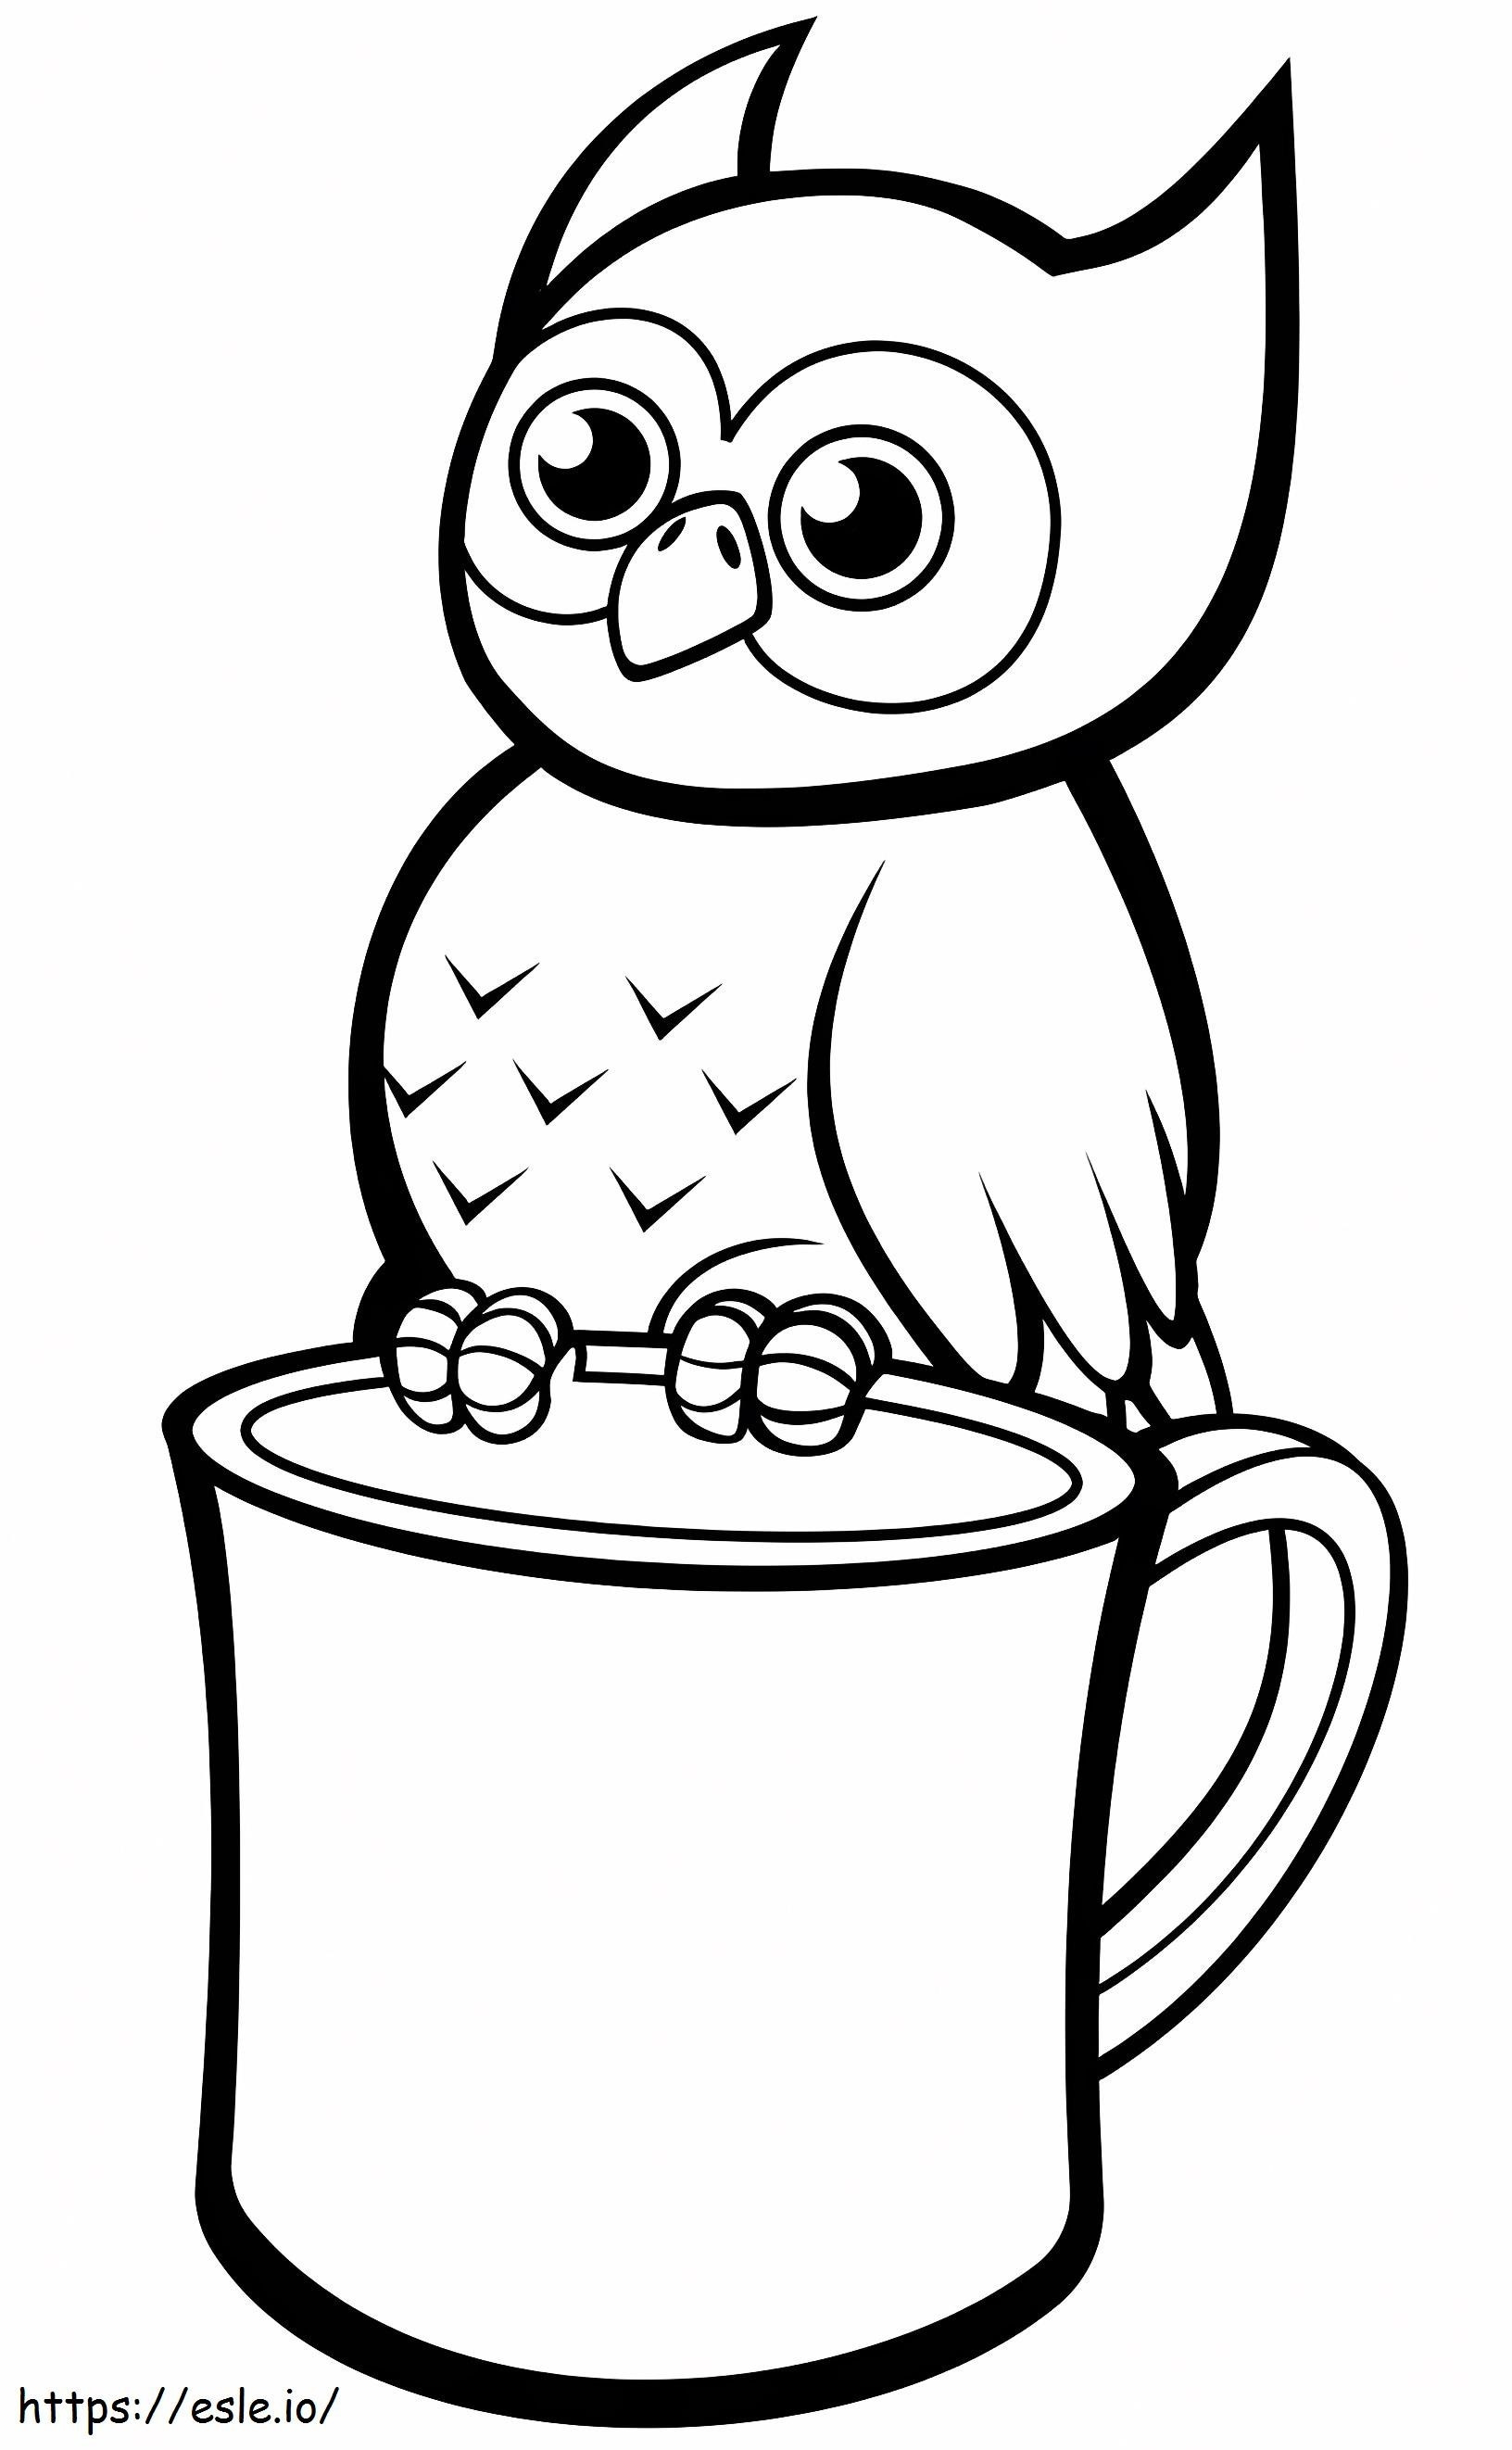 1560328365 Owl On Mug A4 coloring page